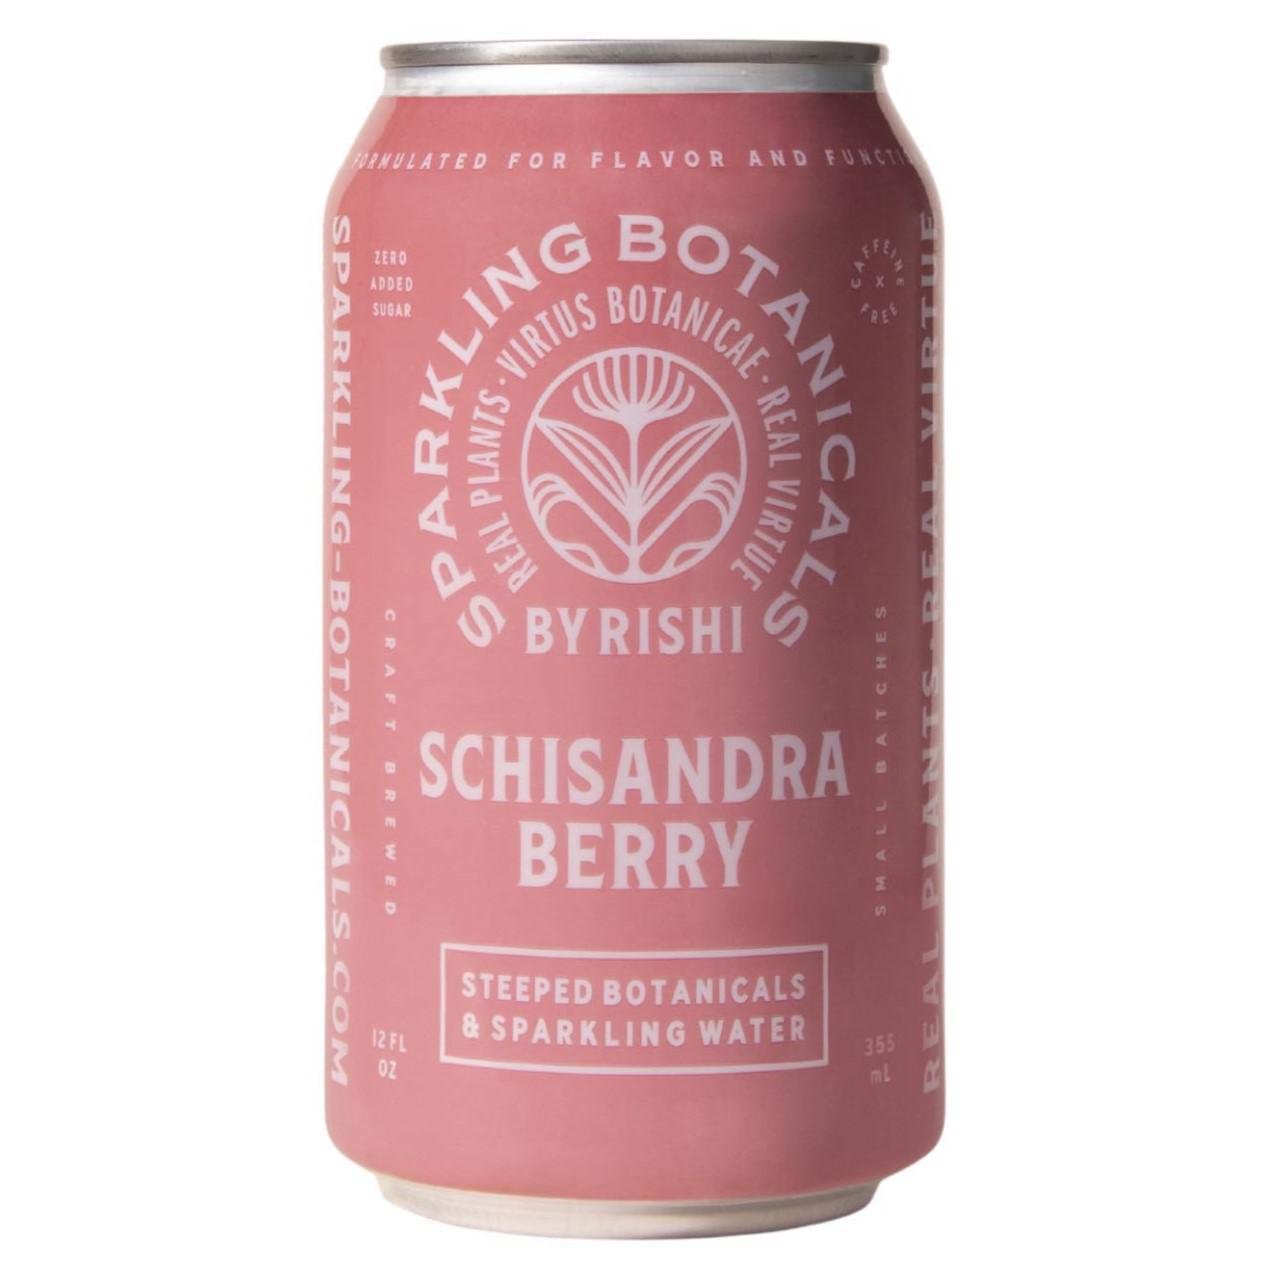 Rishi - Schisandra Berry Sparkling Botanical Tea (12oz)